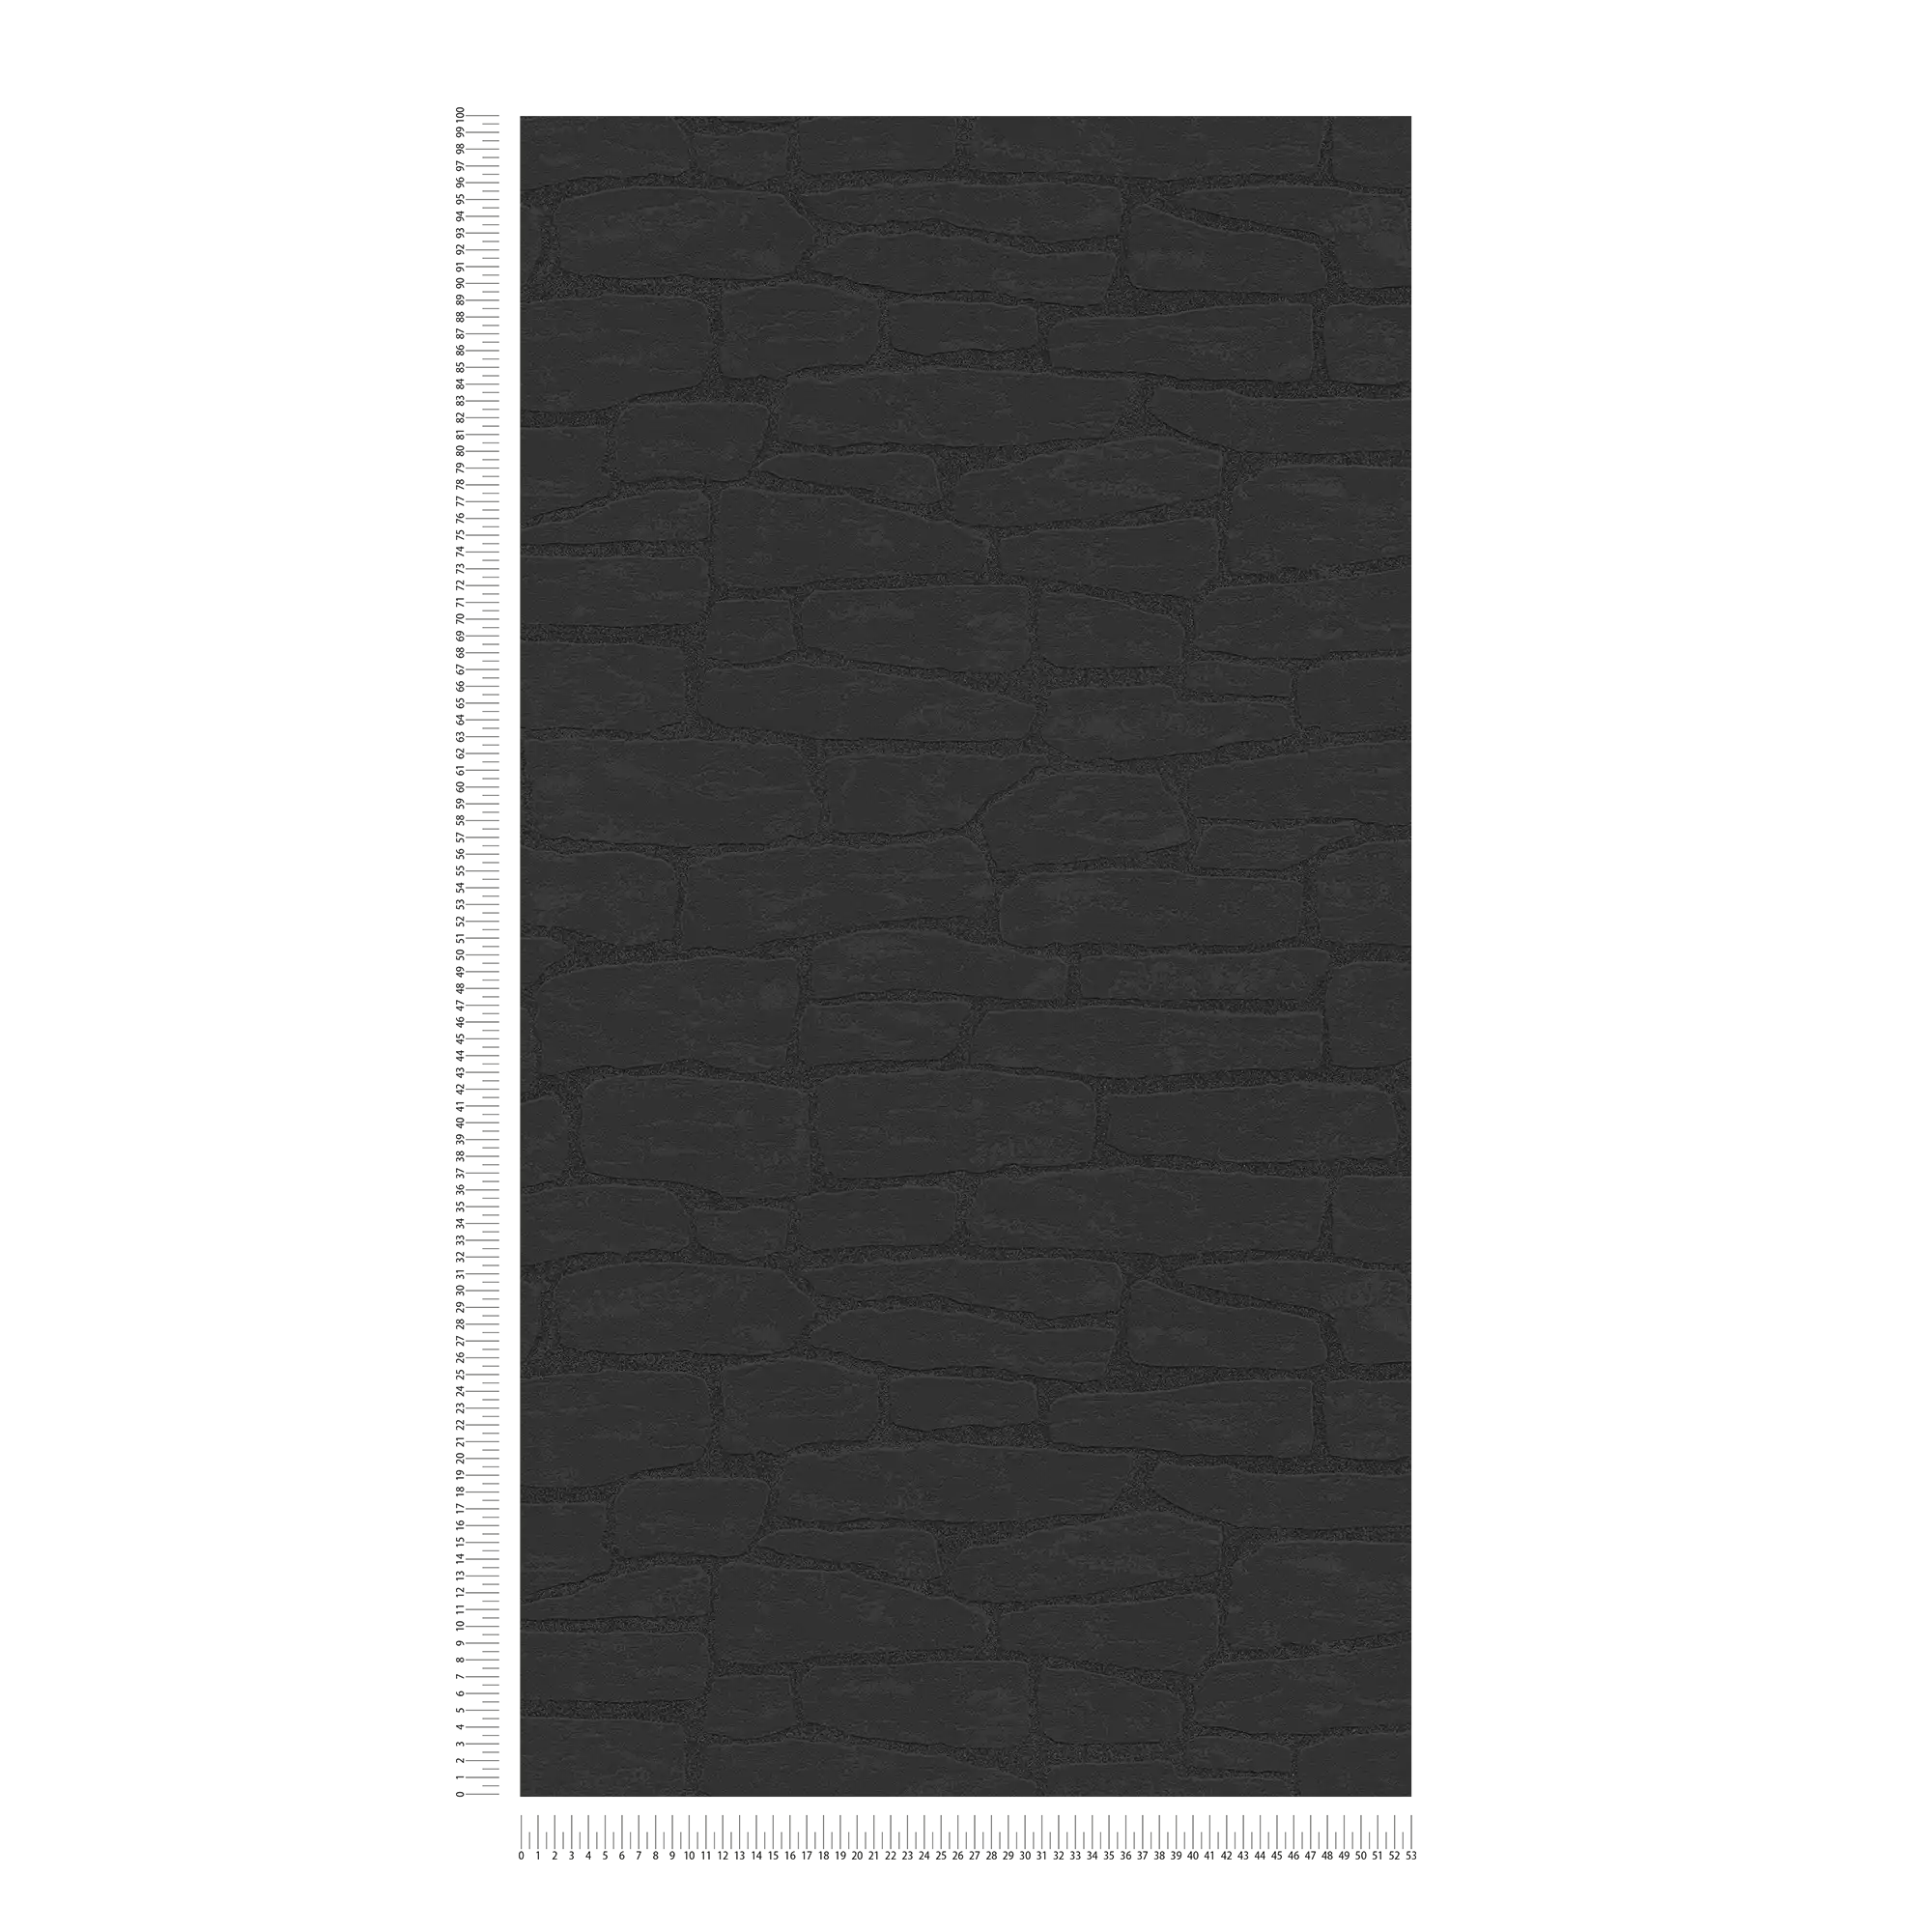             Steenbehang met structuurpatroon en 3D-effect - zwart
        